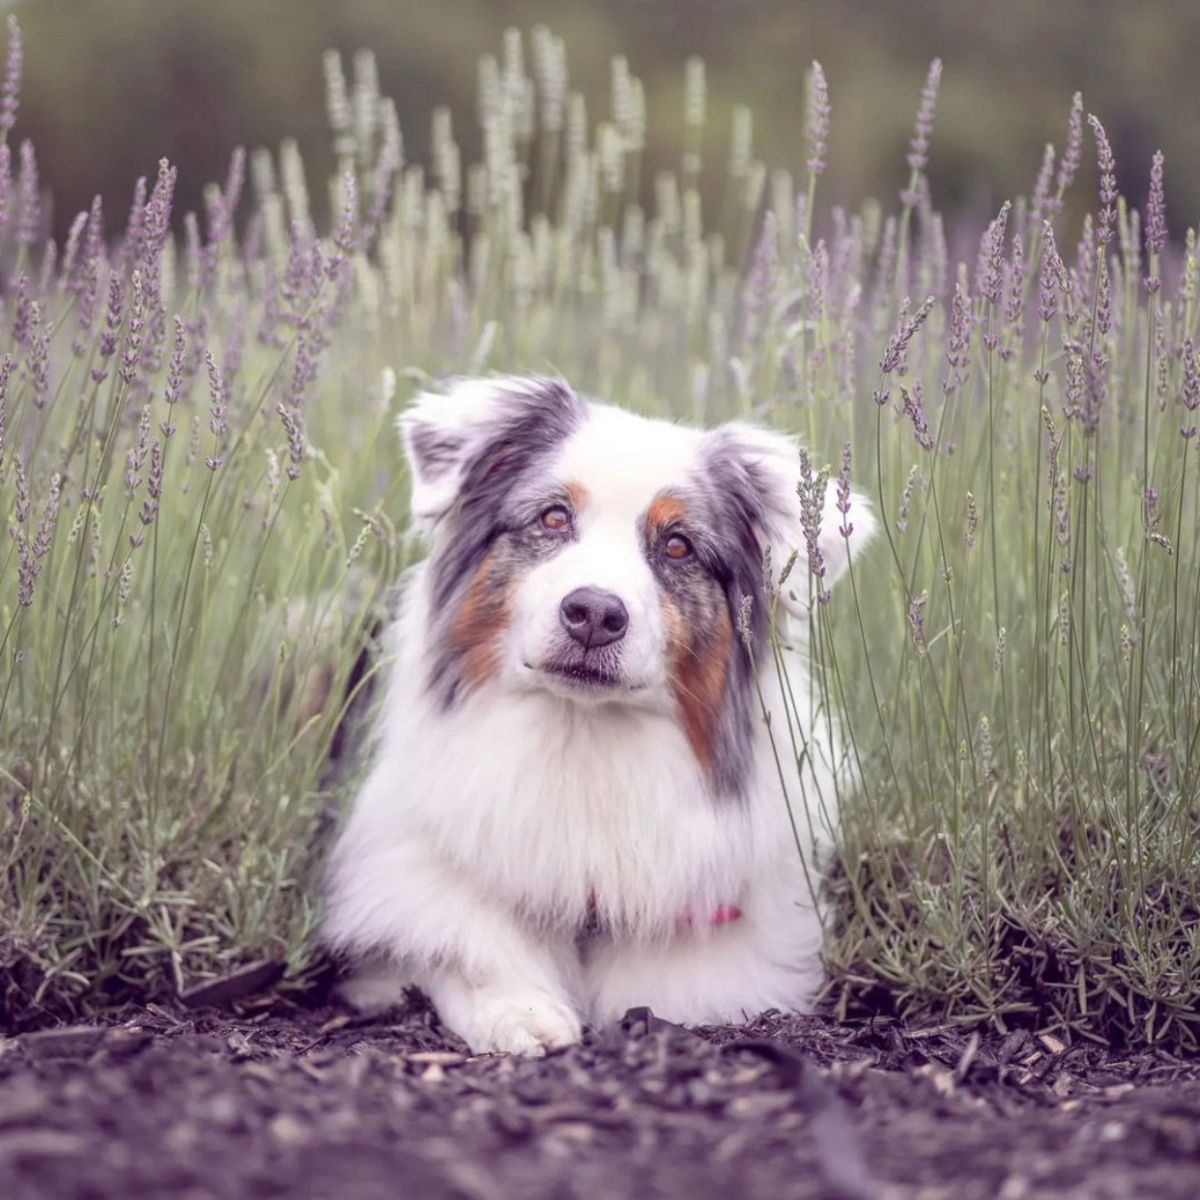 Chien dans les champs de lavande en floraison | Dog in a blooming lavender field